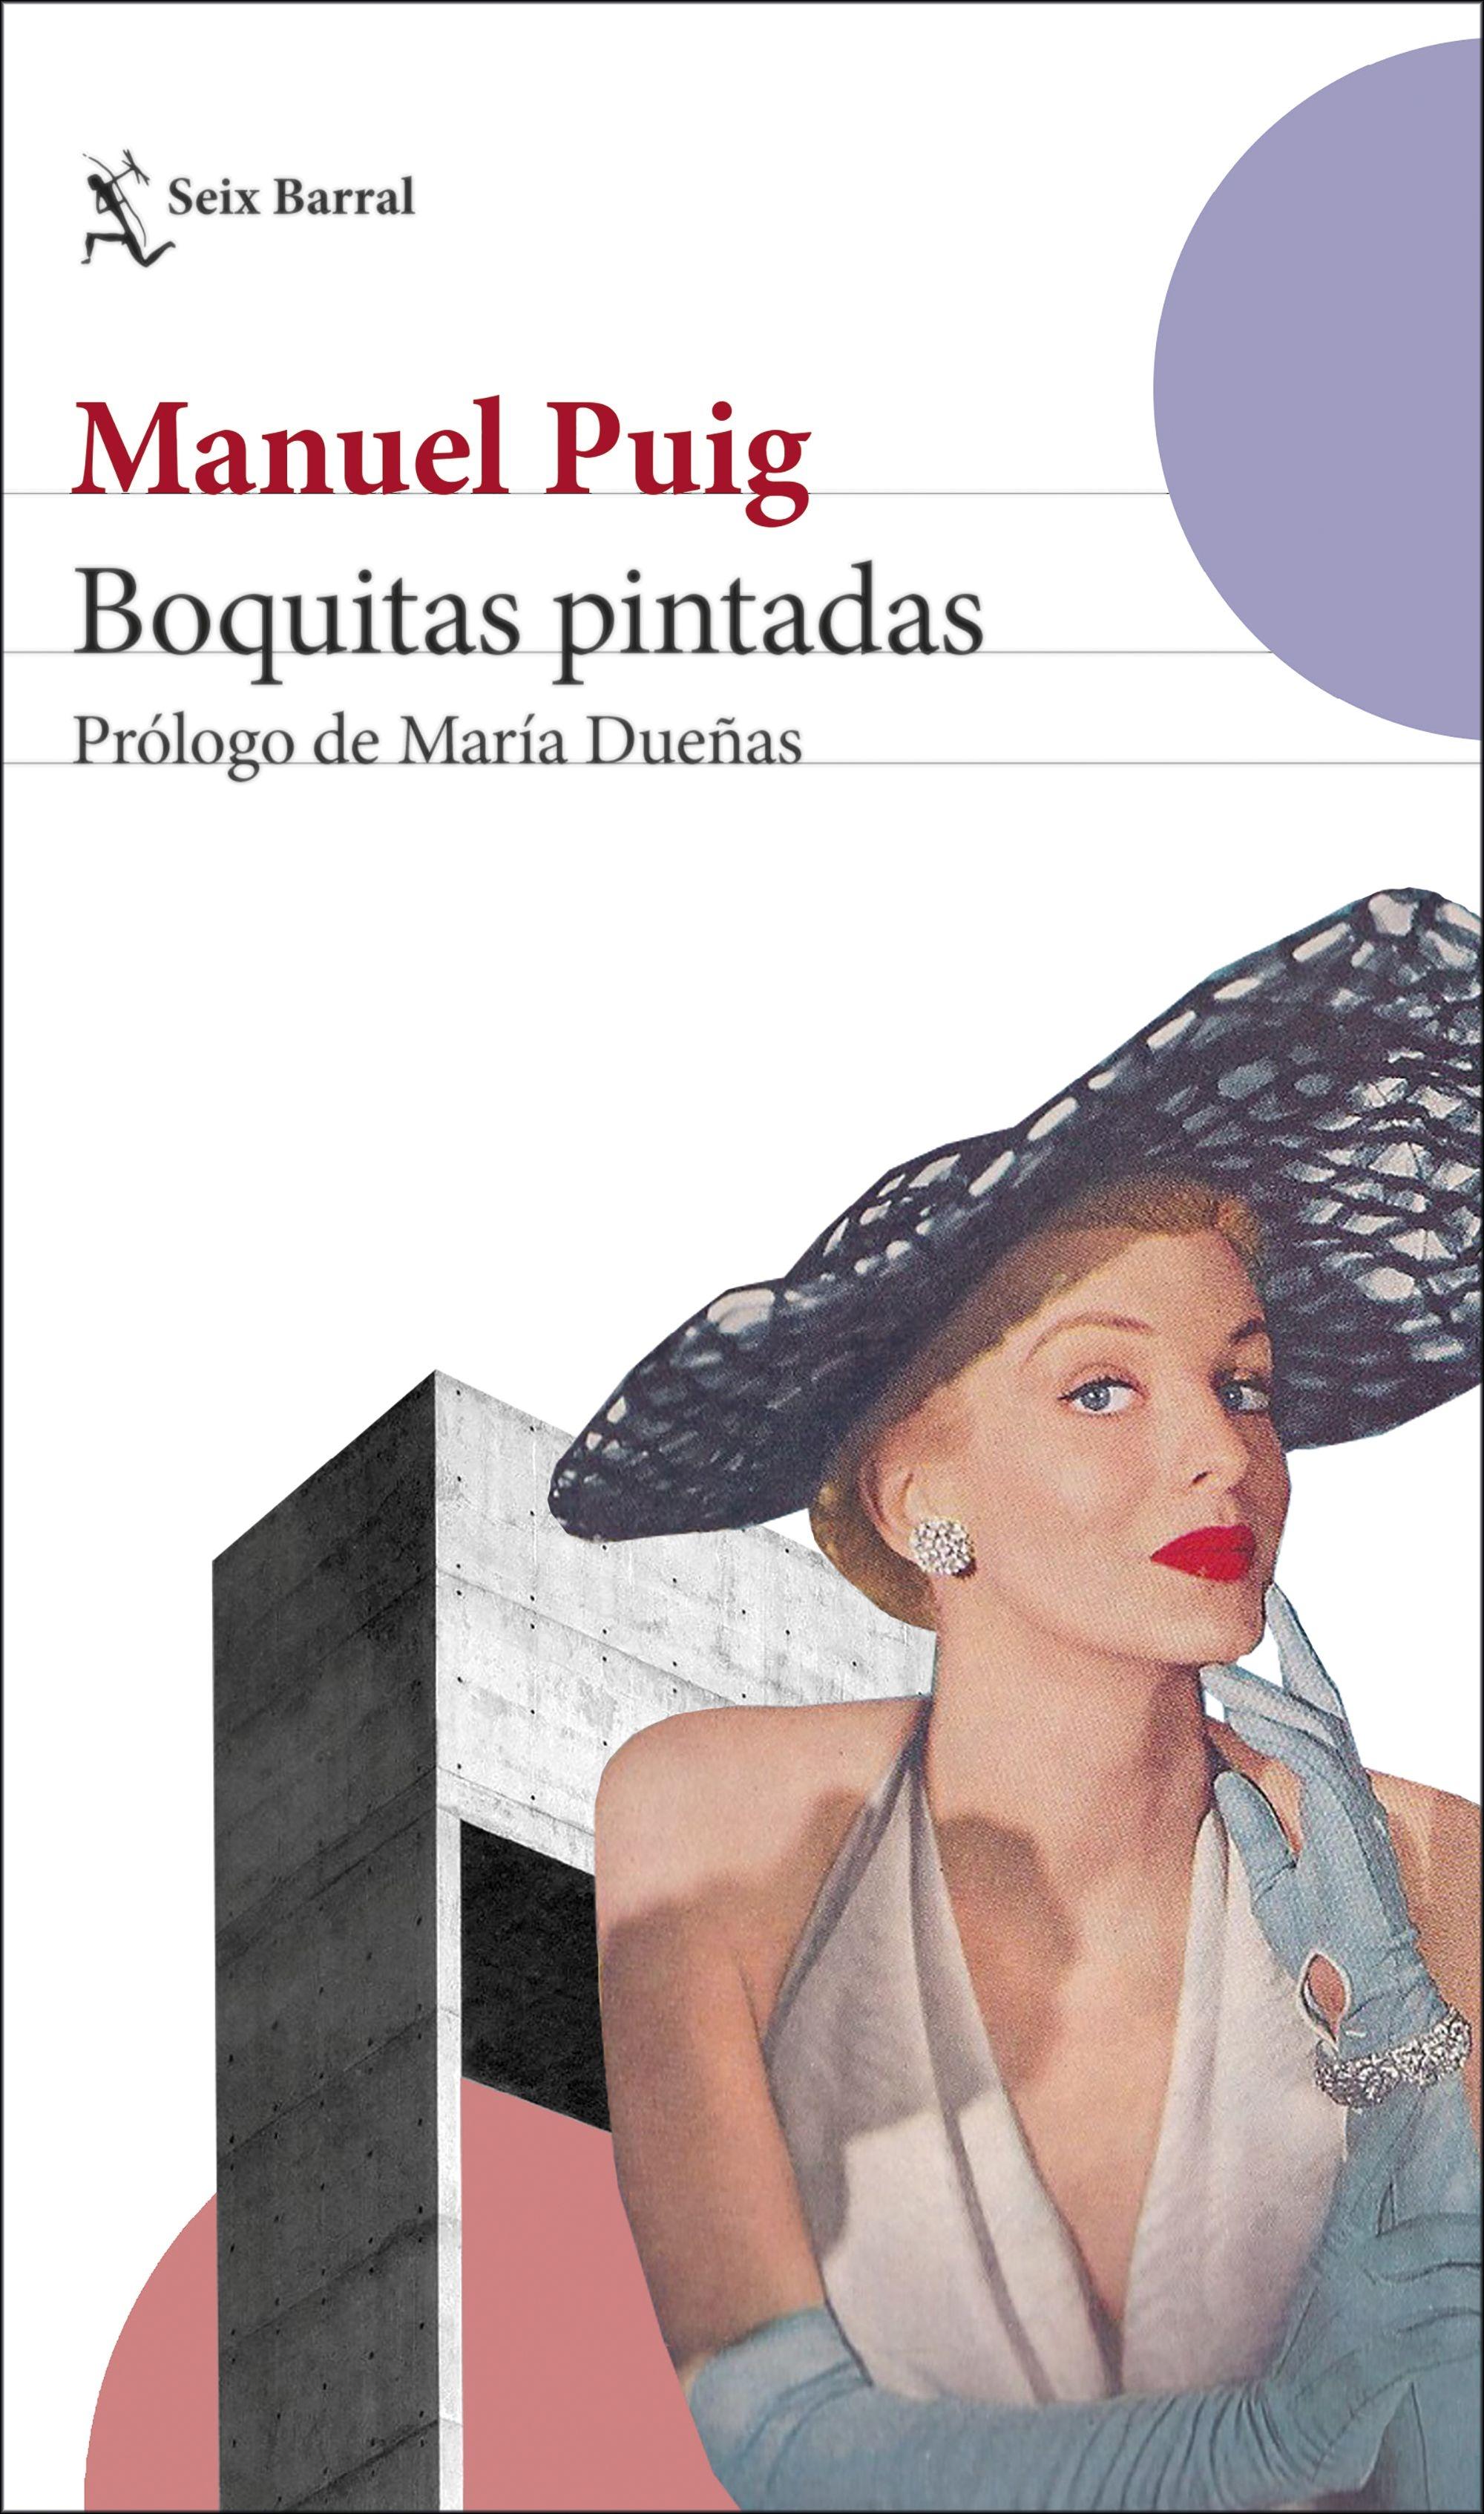 Boquitas Pintadas "Prólogo de María Dueñas"